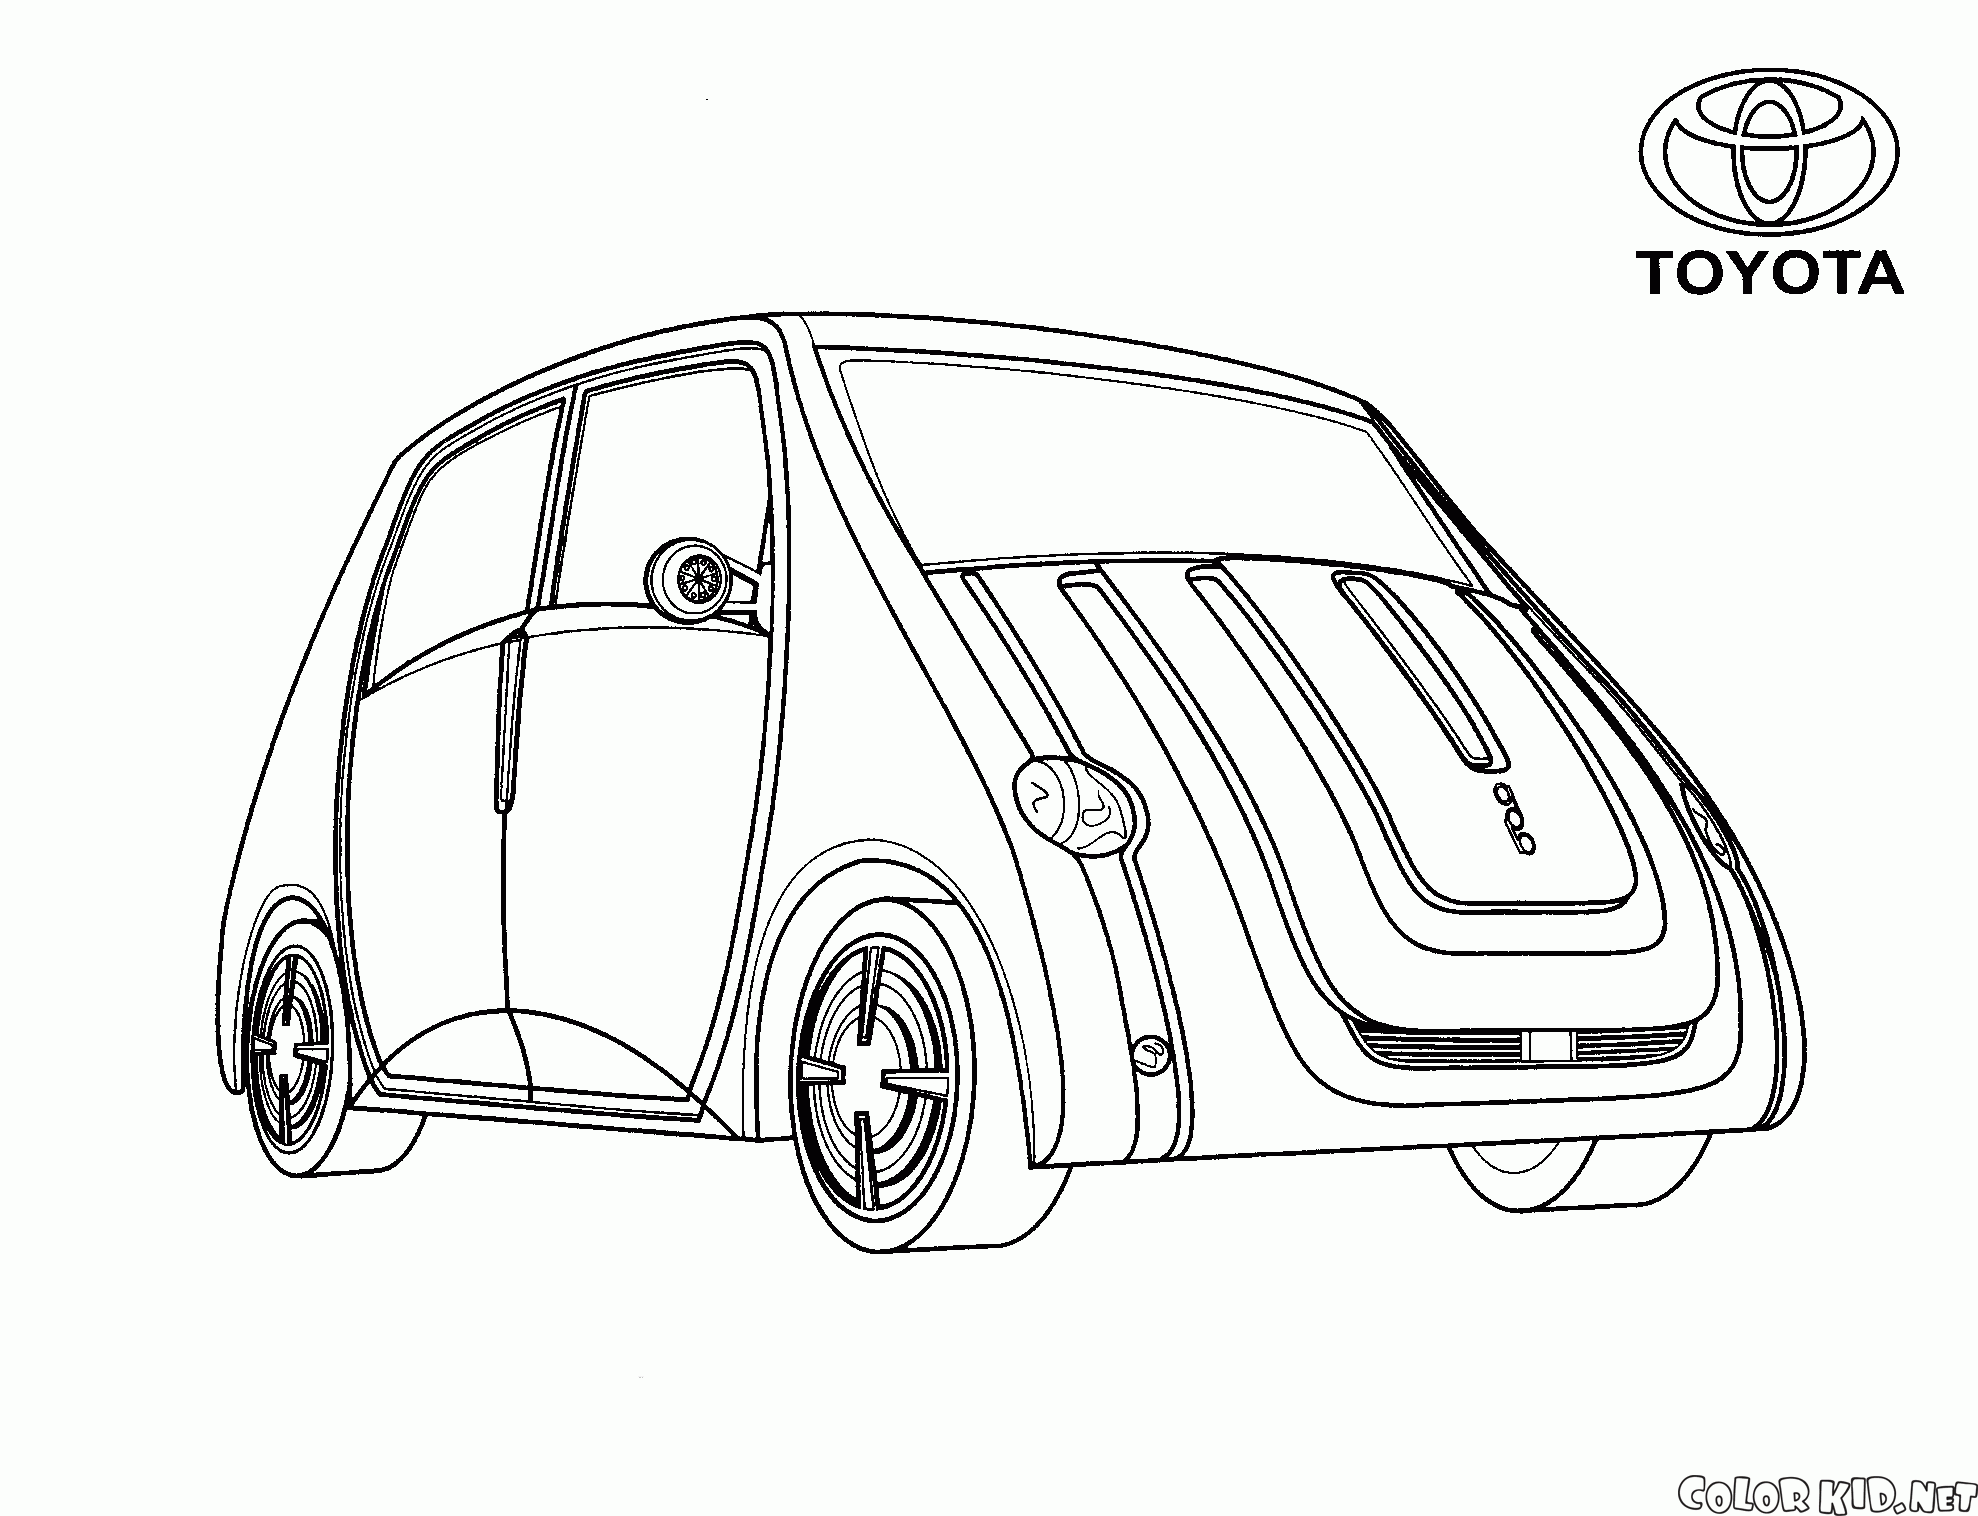 Japońskie mini-van